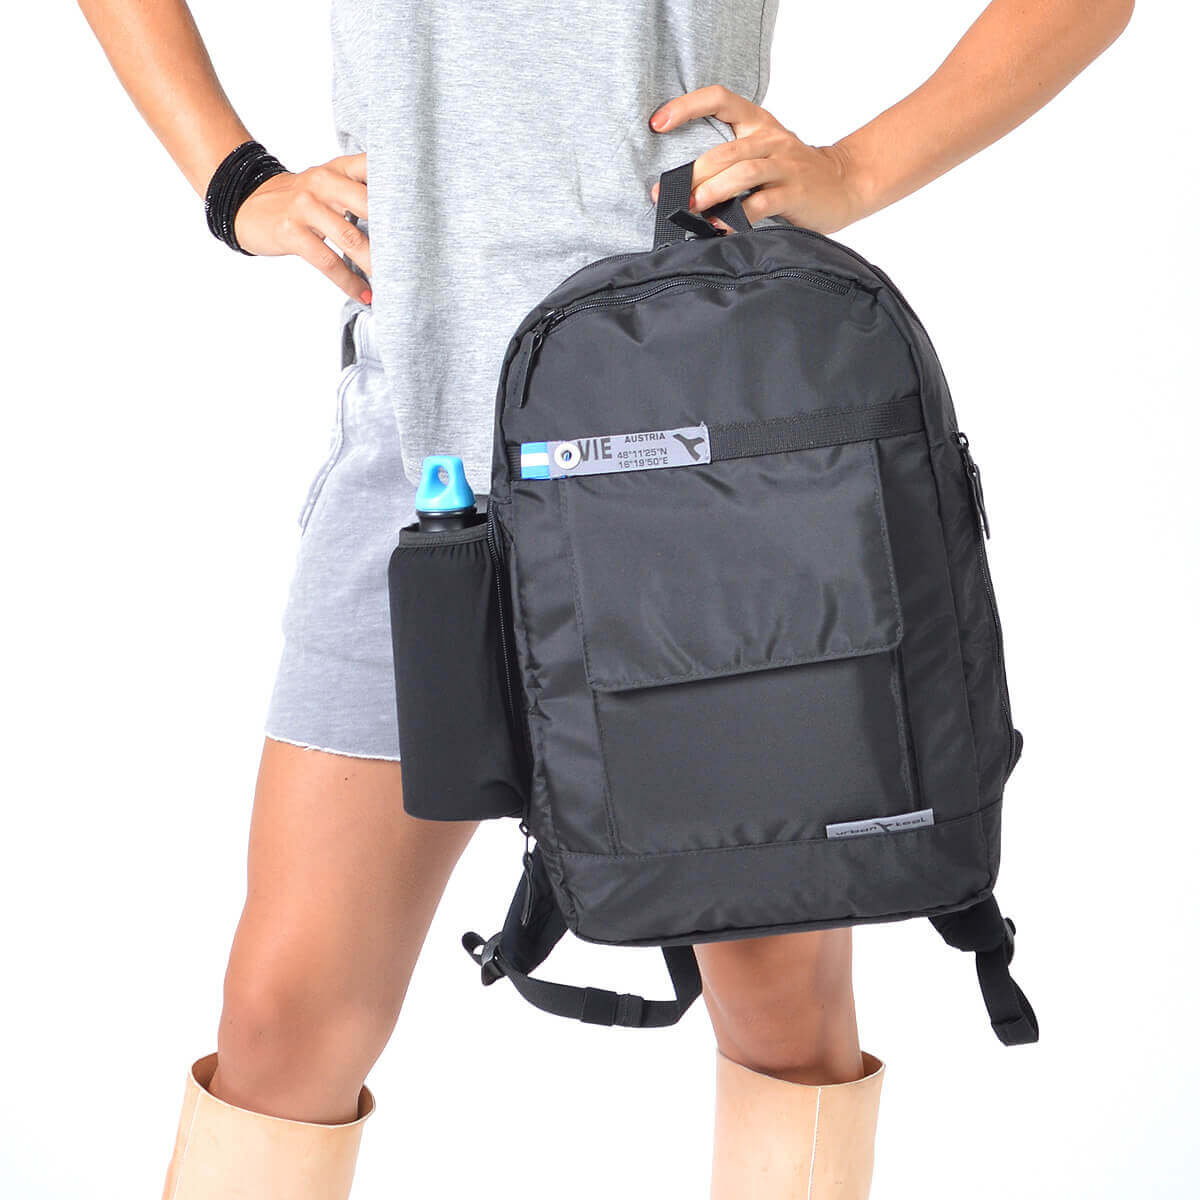 Lightweight Travel Sling Backpacks For Women